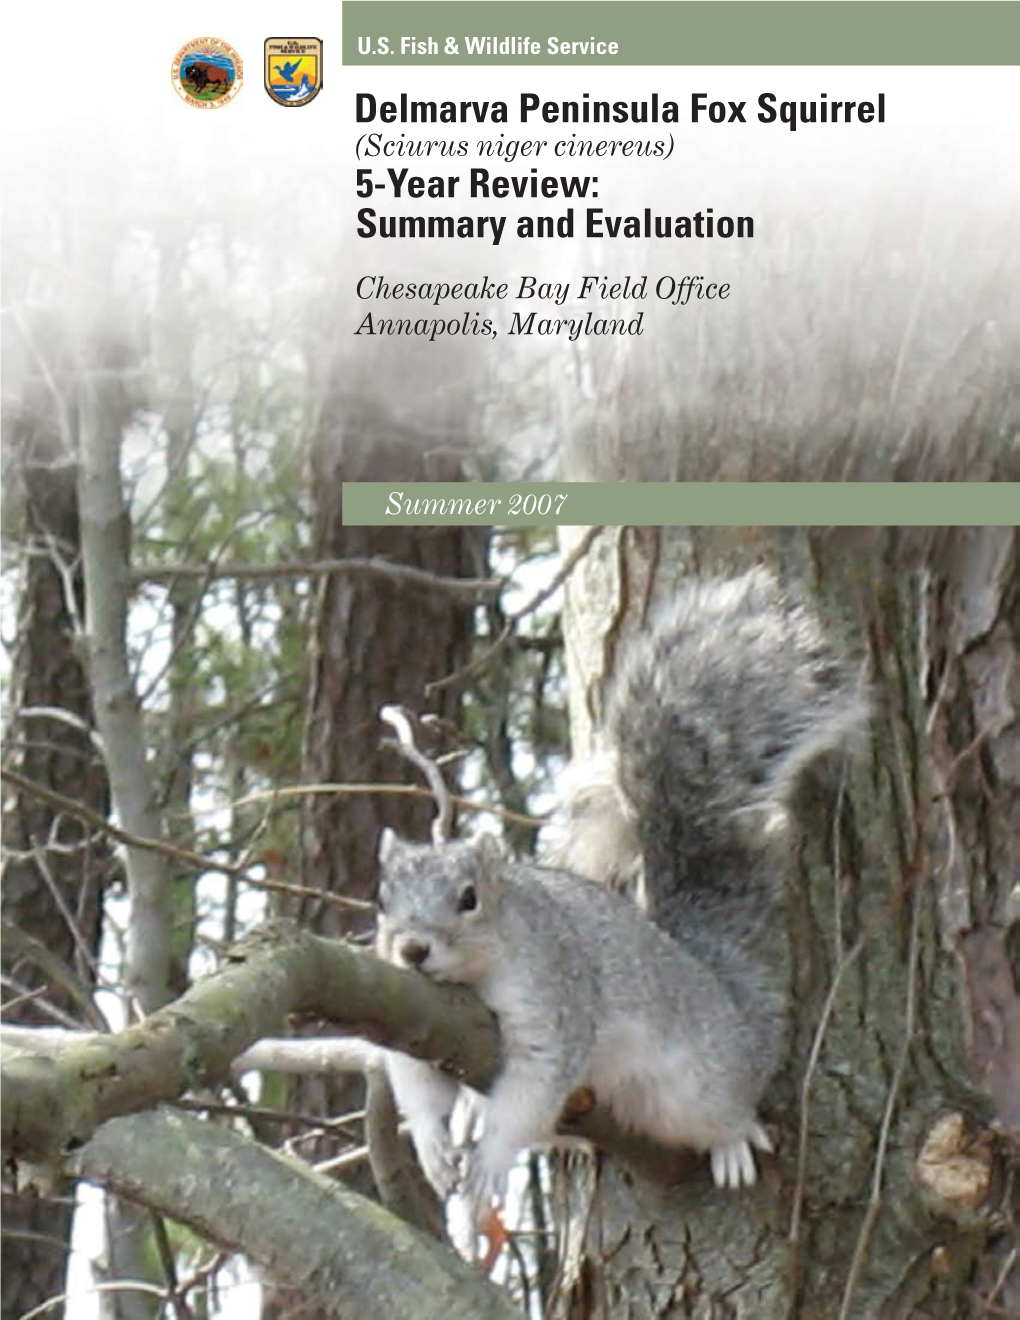 Delmarva Peninsula Fox Squirrel 5-Year Review: Summary and Evaluation